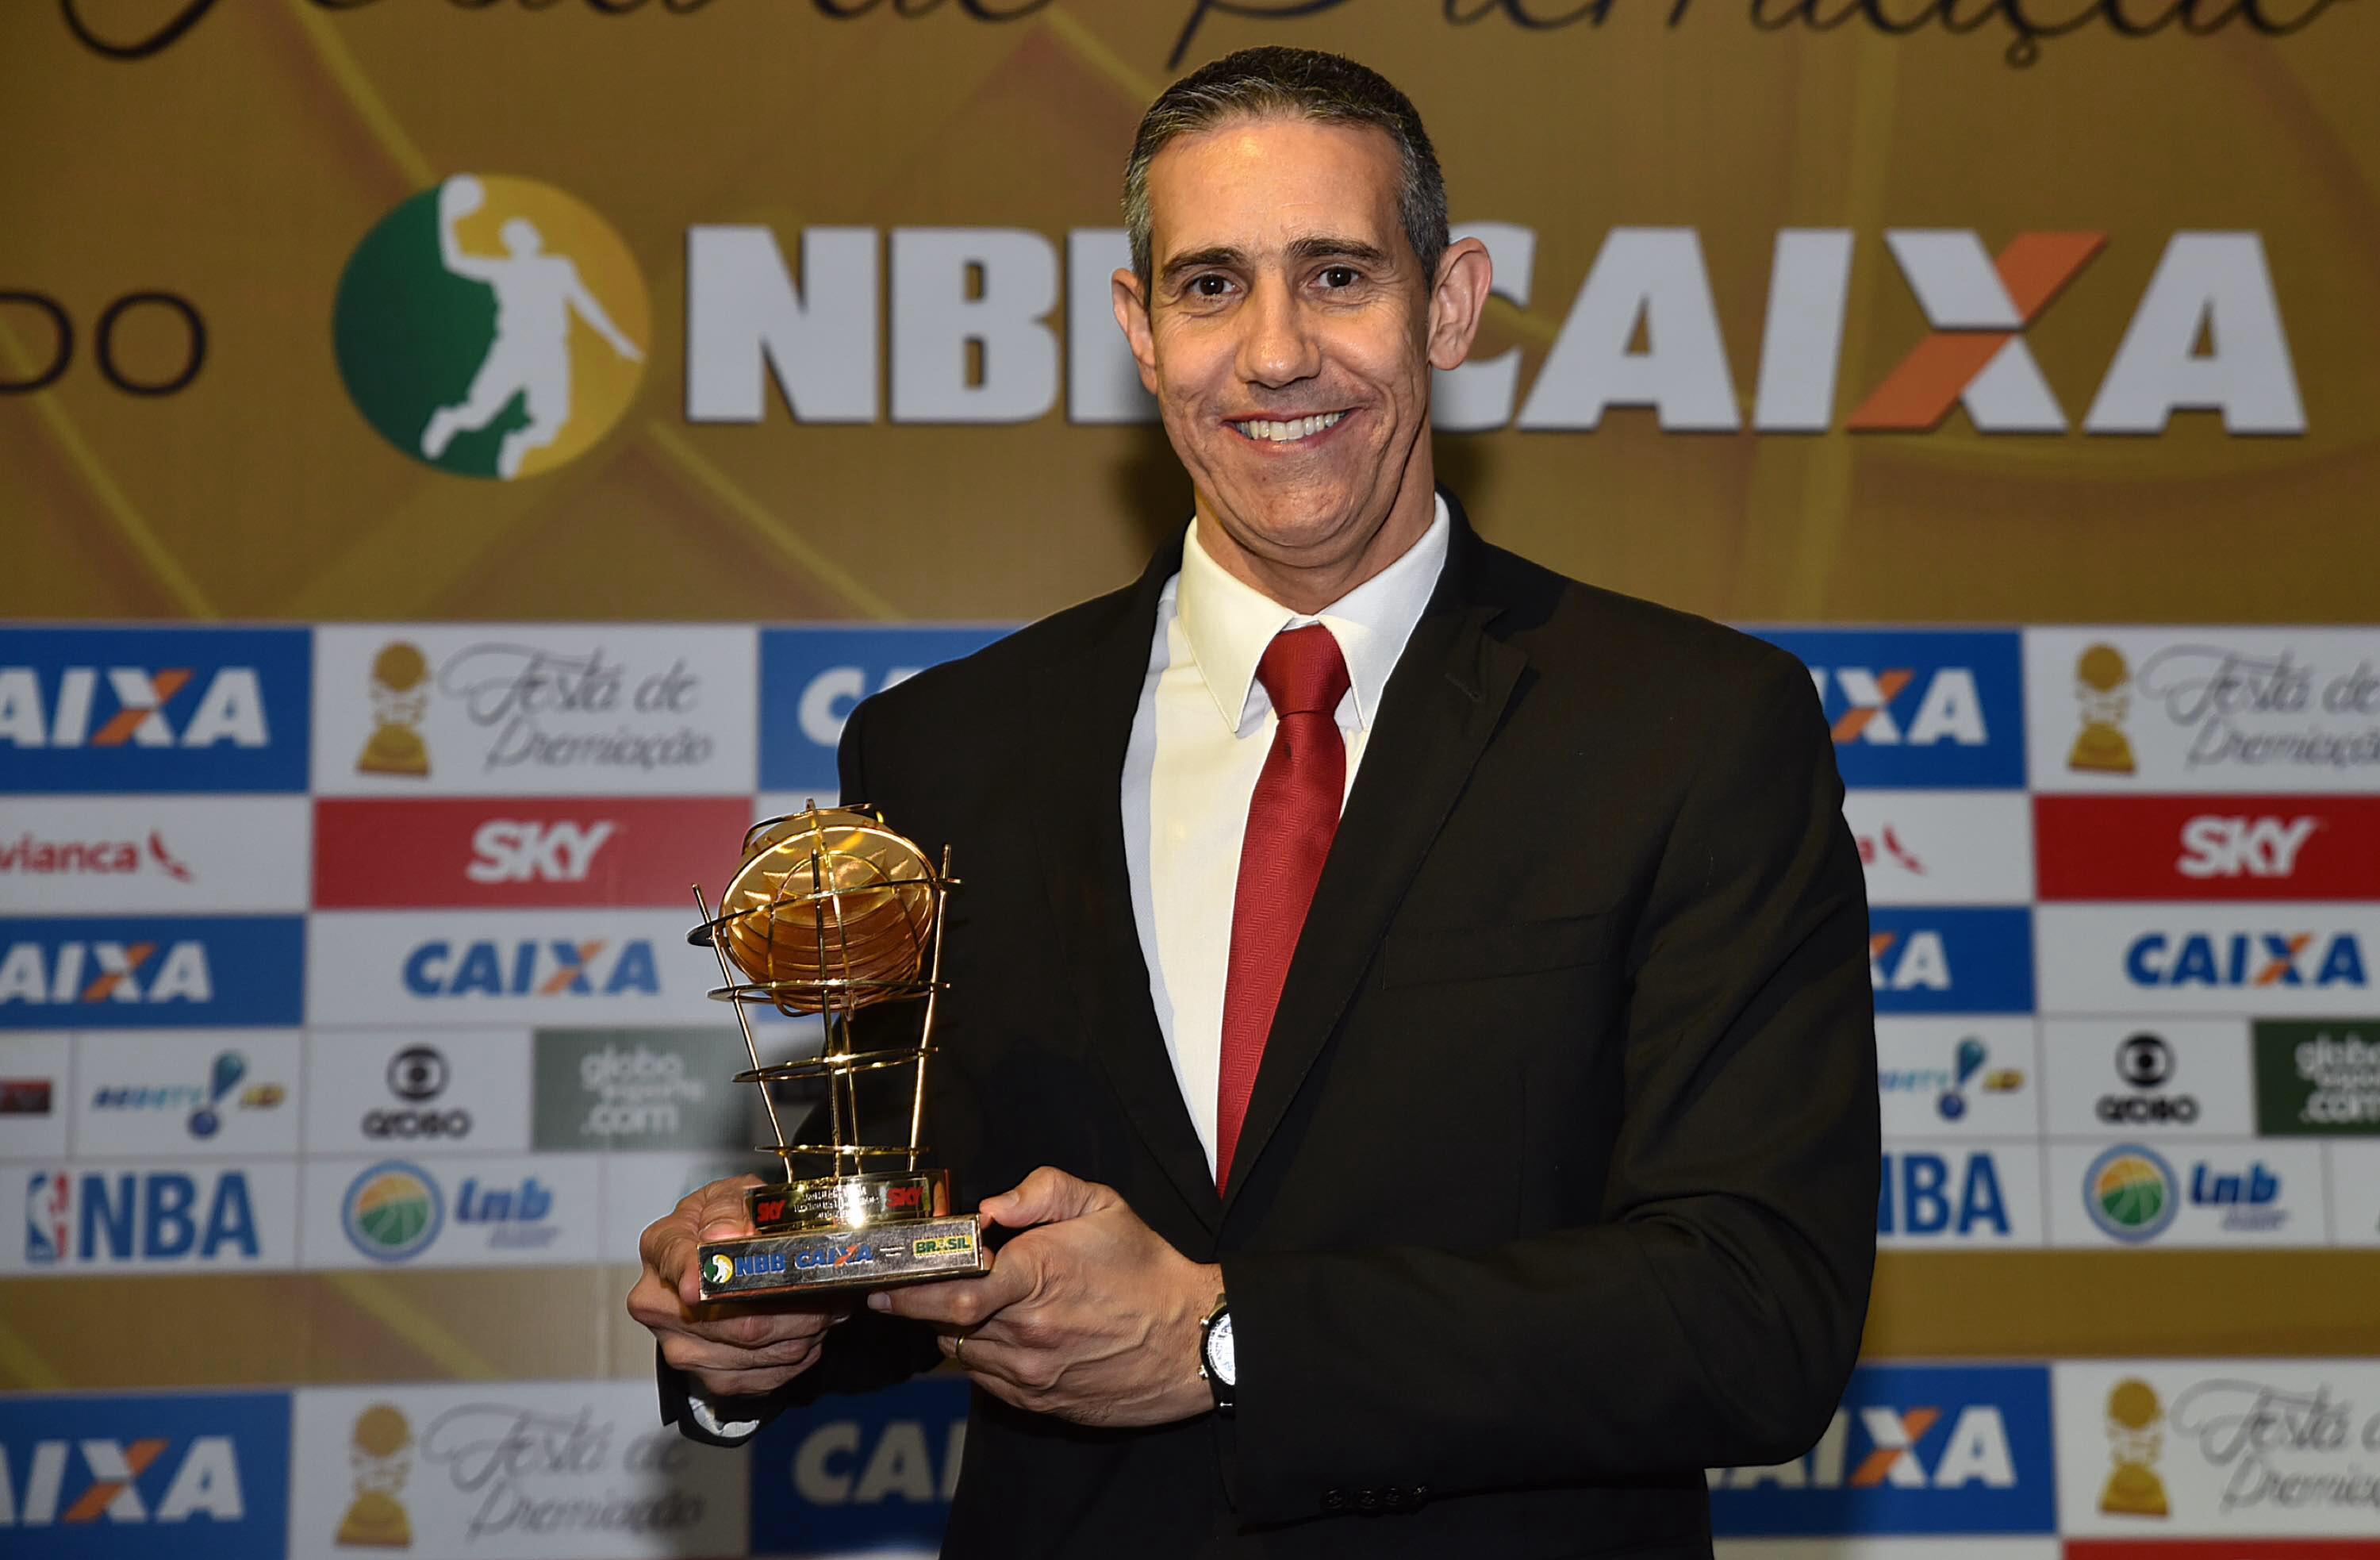 Tetracampeão do NBB CAIXA, José Neto faturou o prêmio de melhor técnico da temporada 2015/2016 (João Pires/LNB)